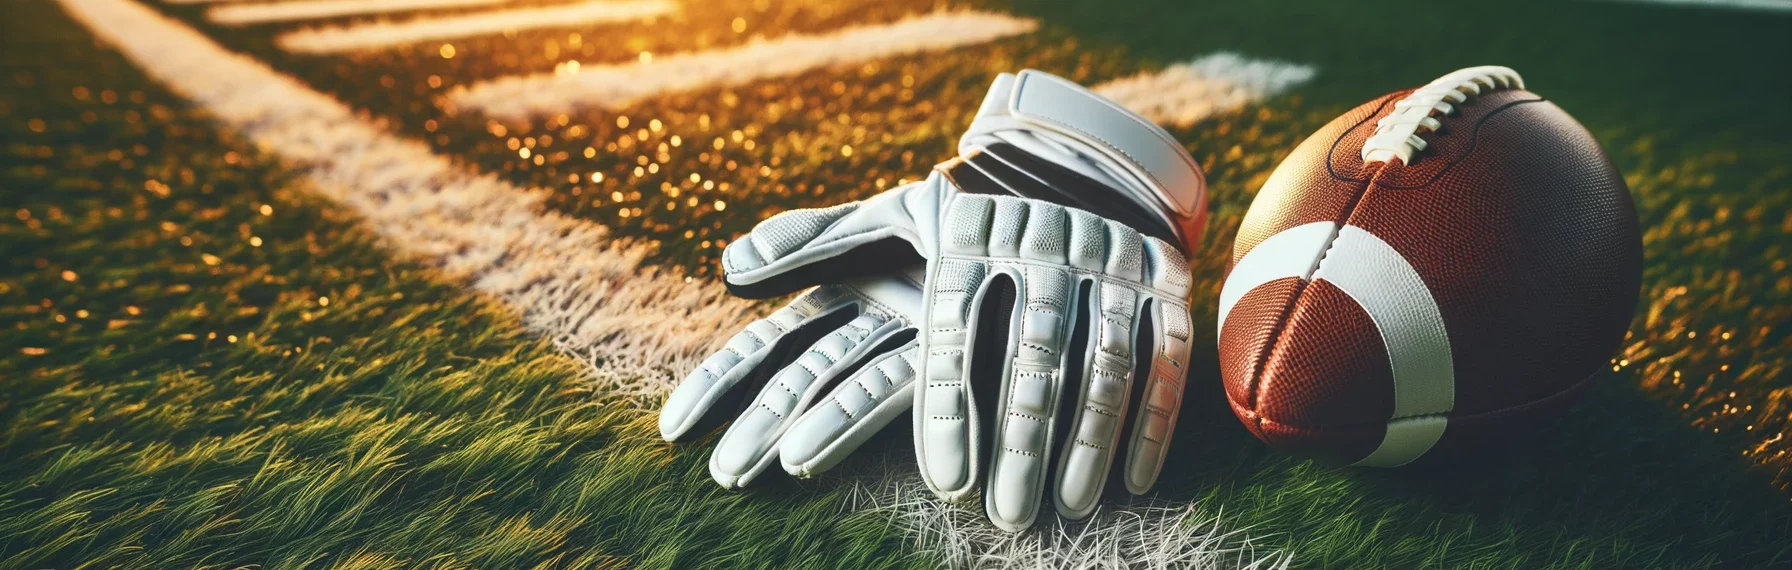 Foto eines Paars American-Football-Handschuhe, die auf einem grasbewachsenen Feld liegen, wobei die weißen Begrenzungslinien sichtbar sind.